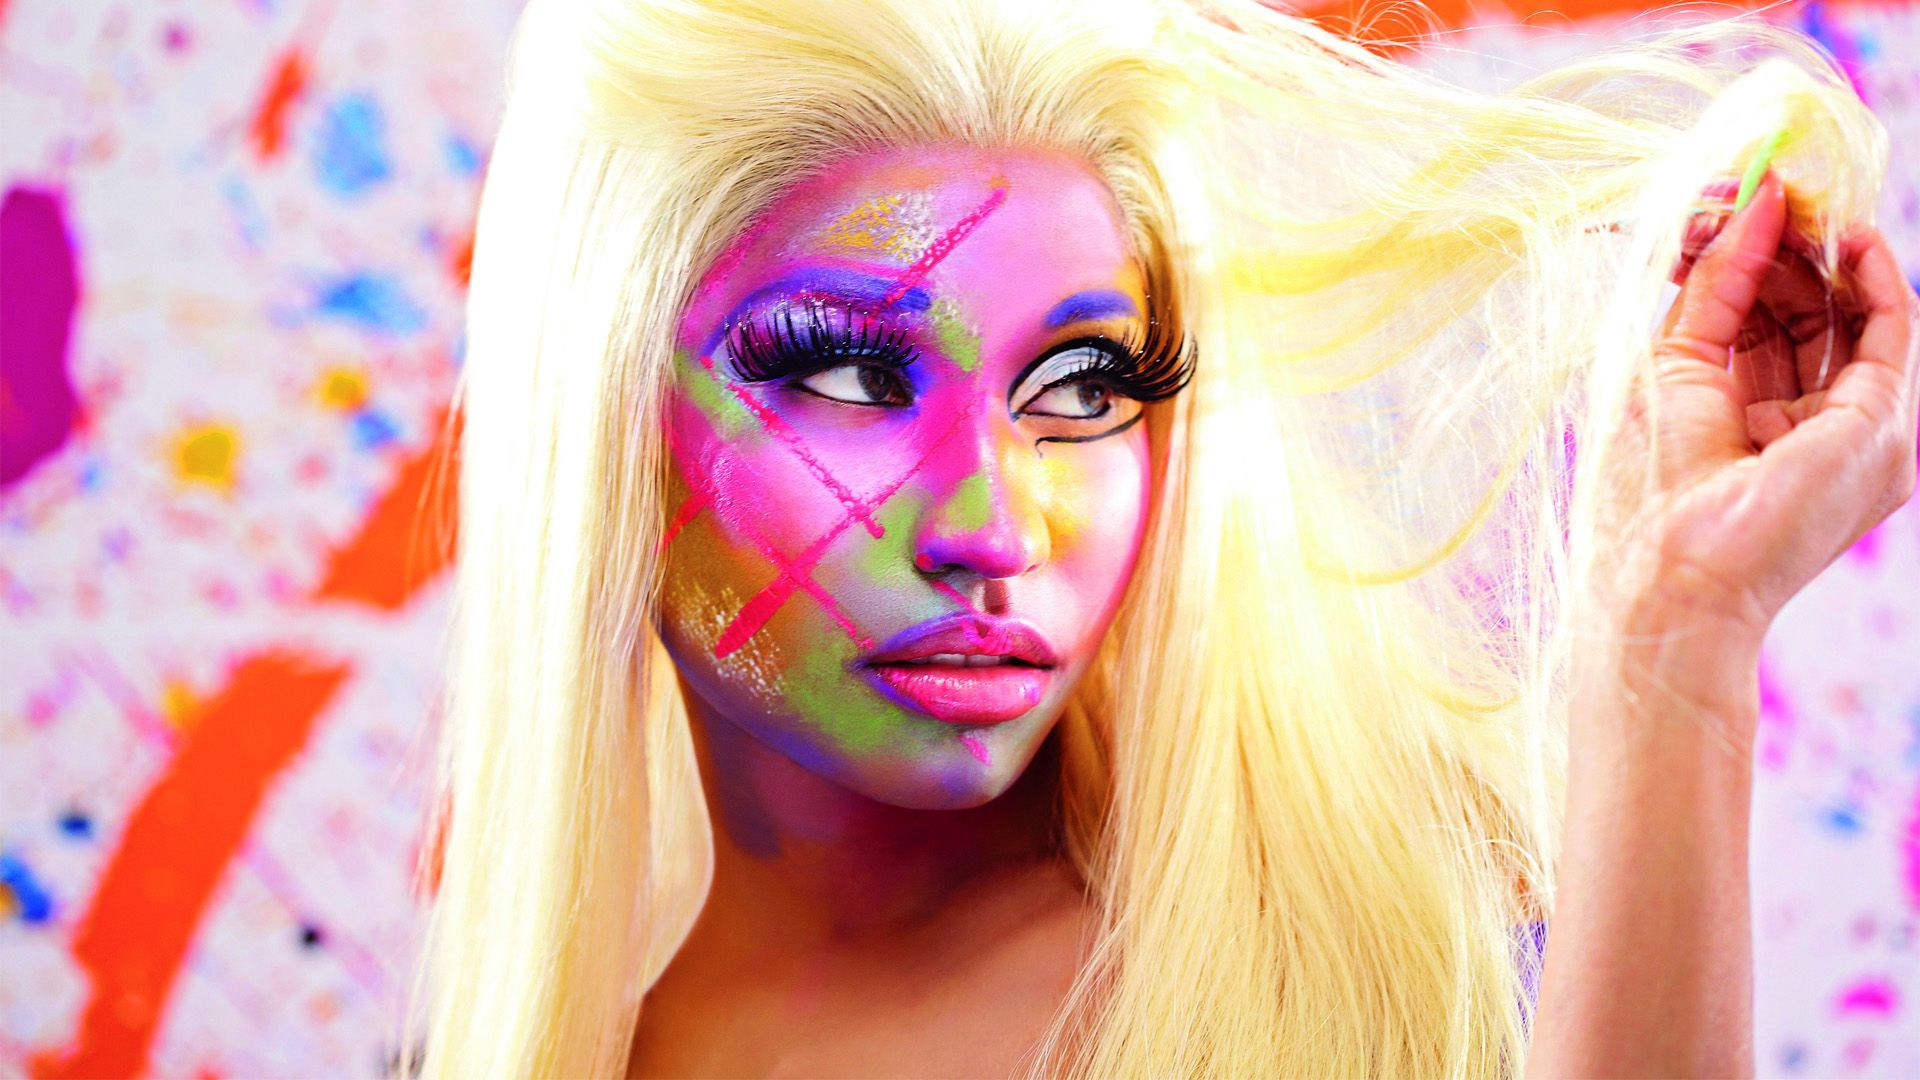 Nicki Minaj. Music Video About Her